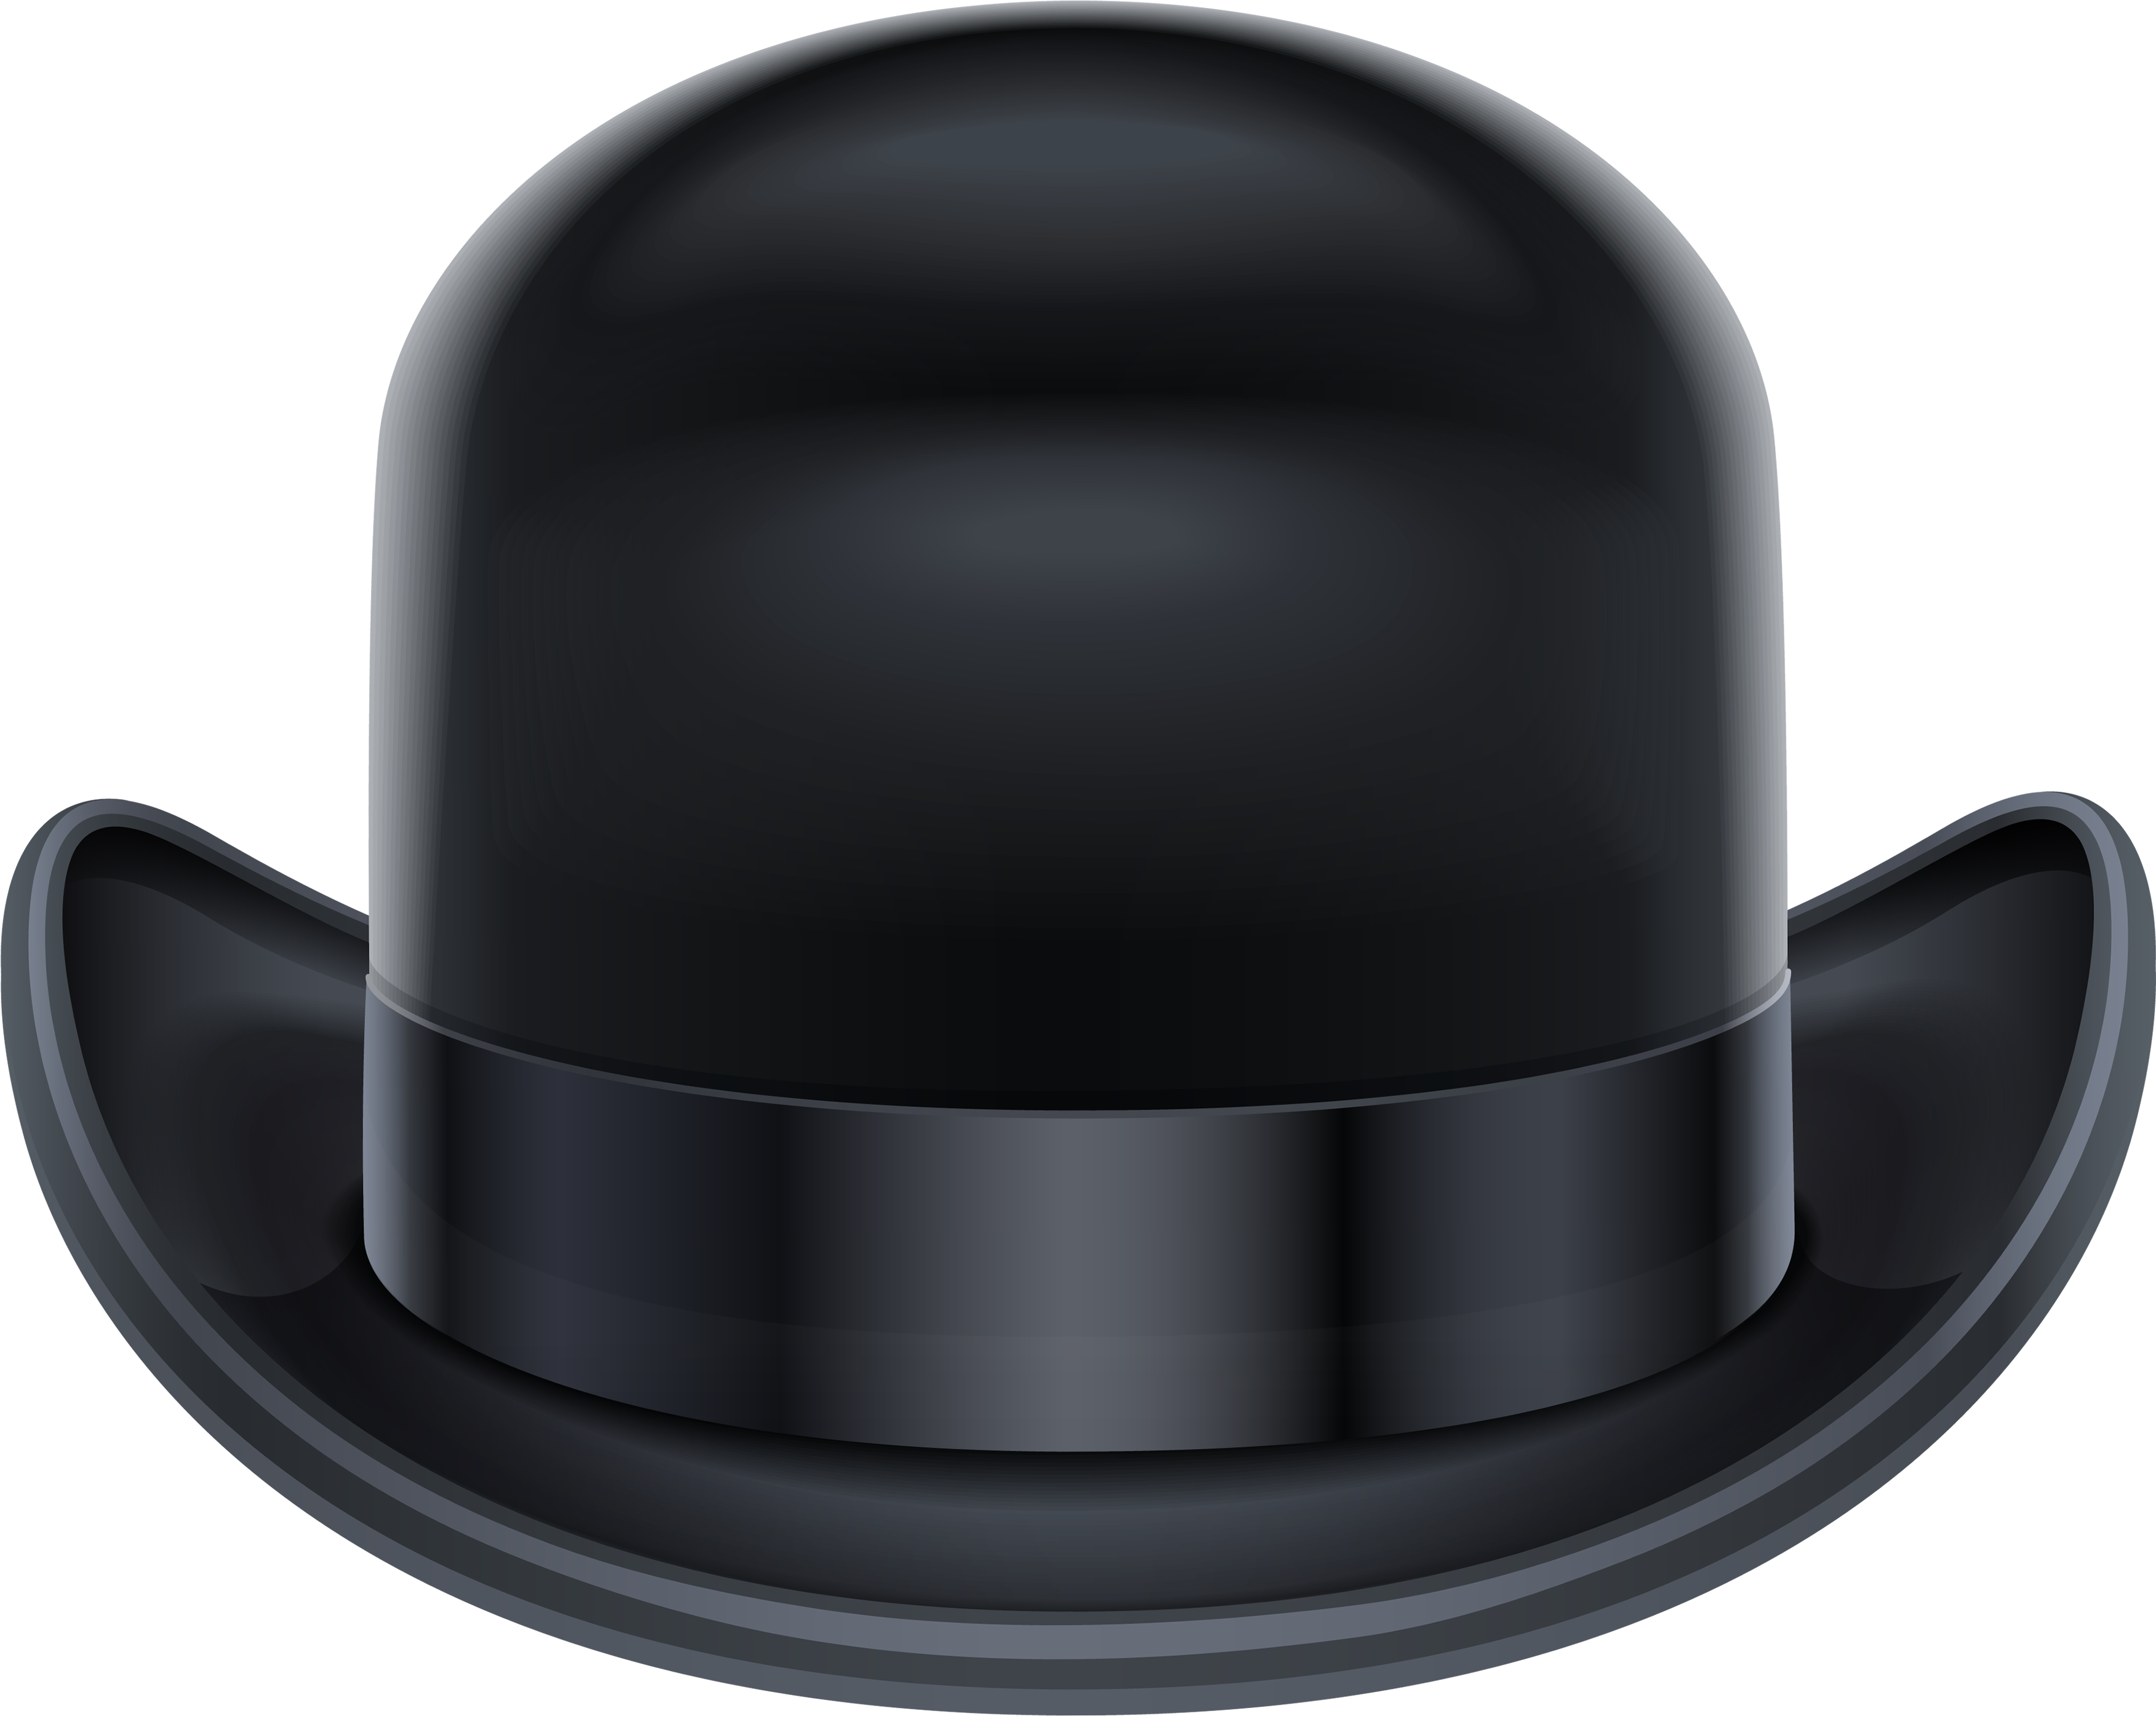 Czarny kapelusz